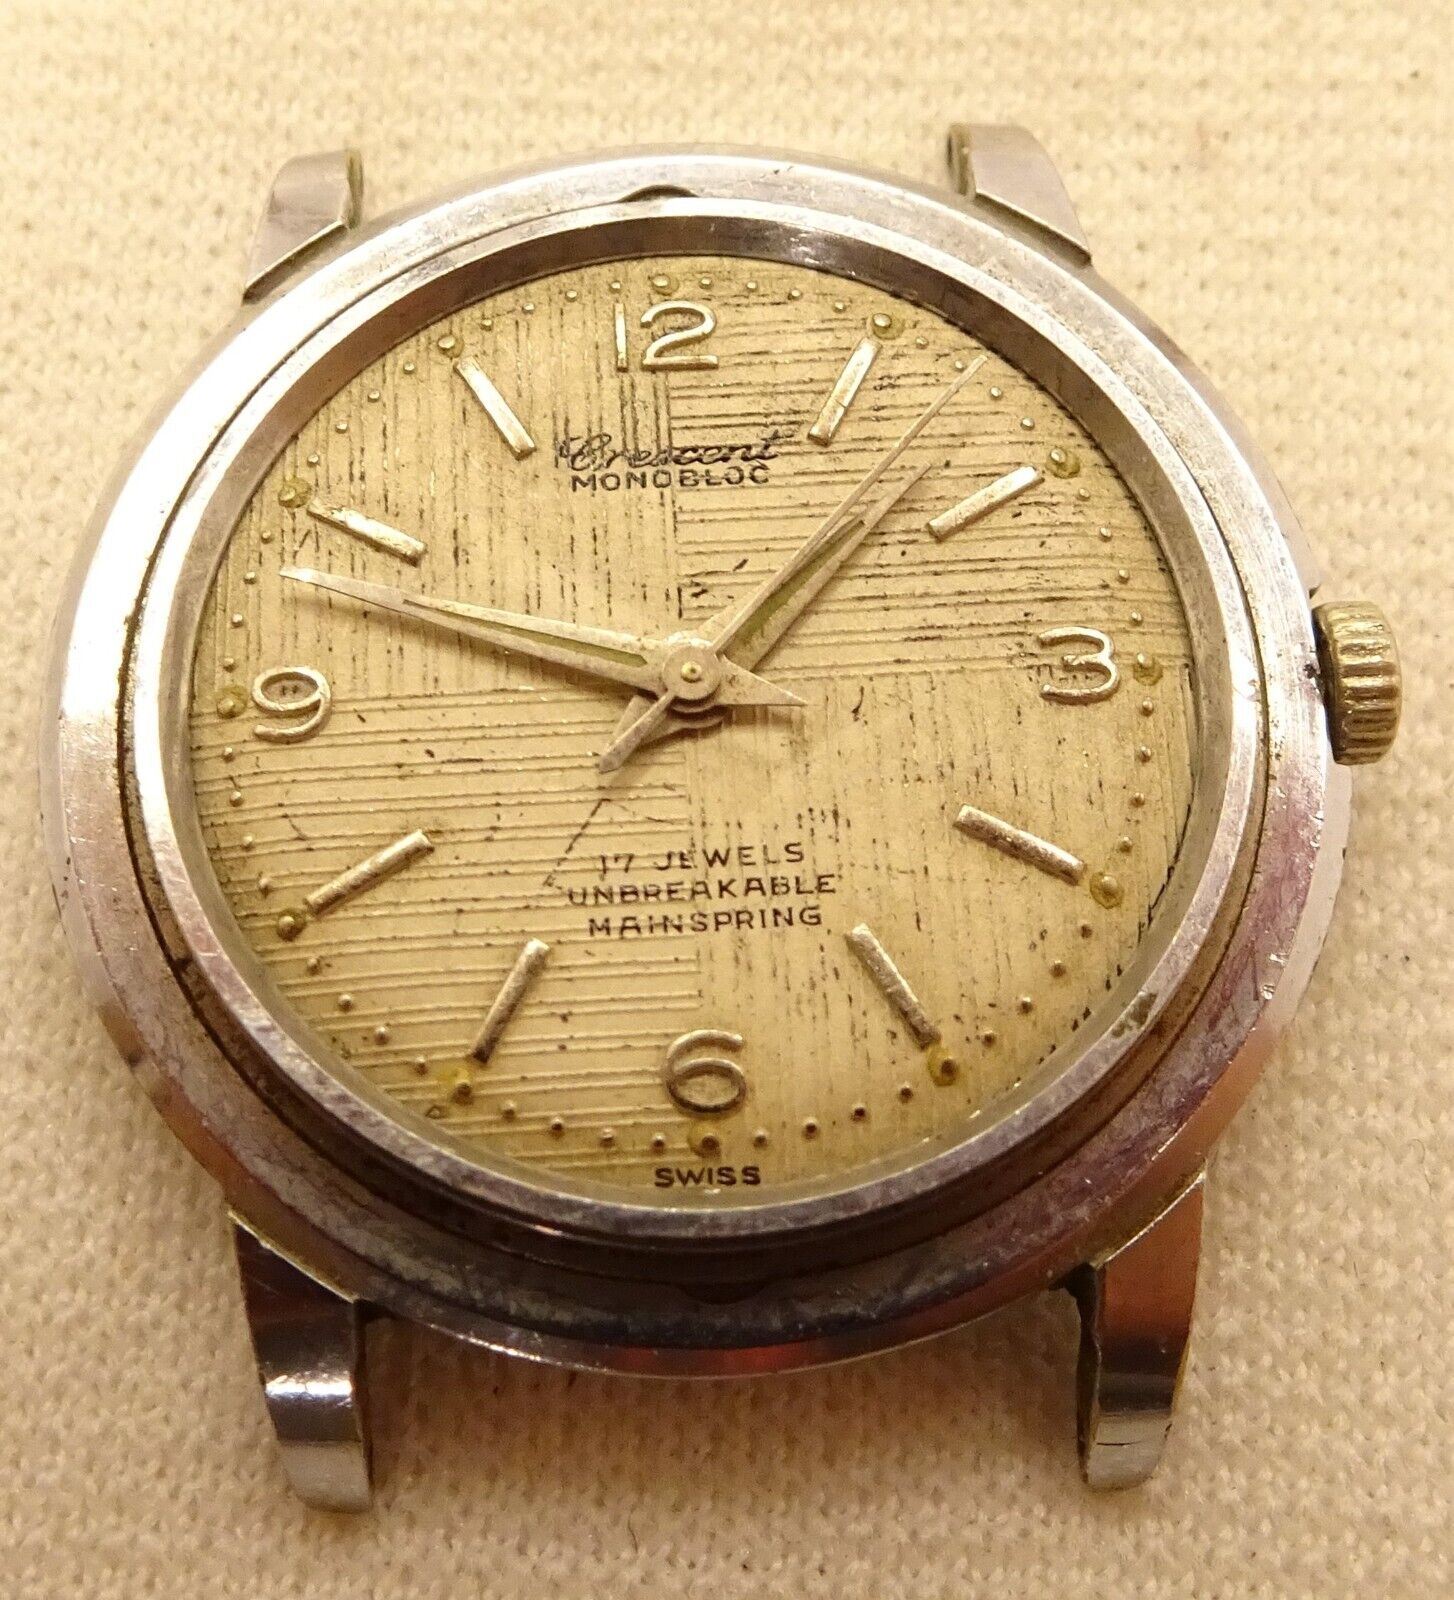 Men's Vintage Crescent 17J Watch - Parts/Repair